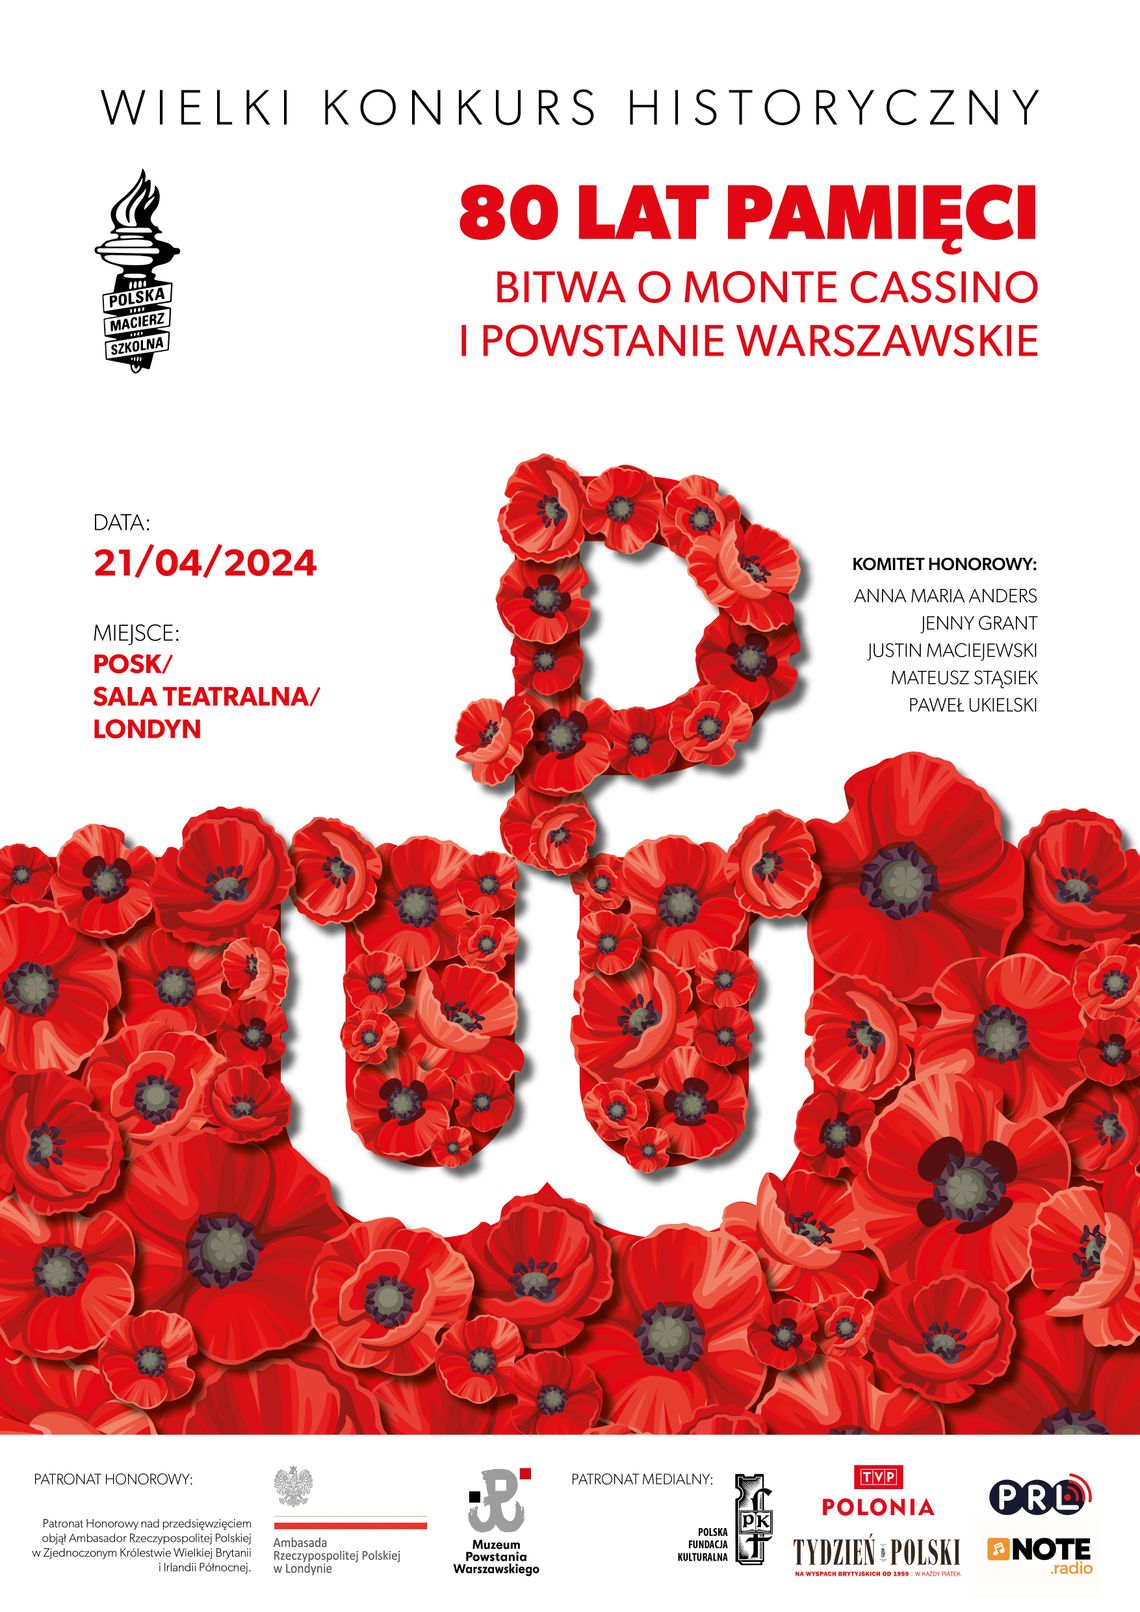 Wielki konkurs historyczny „80 lat pamięci. Bitwa o Monte Cassino i Powstanie Warszawskie”